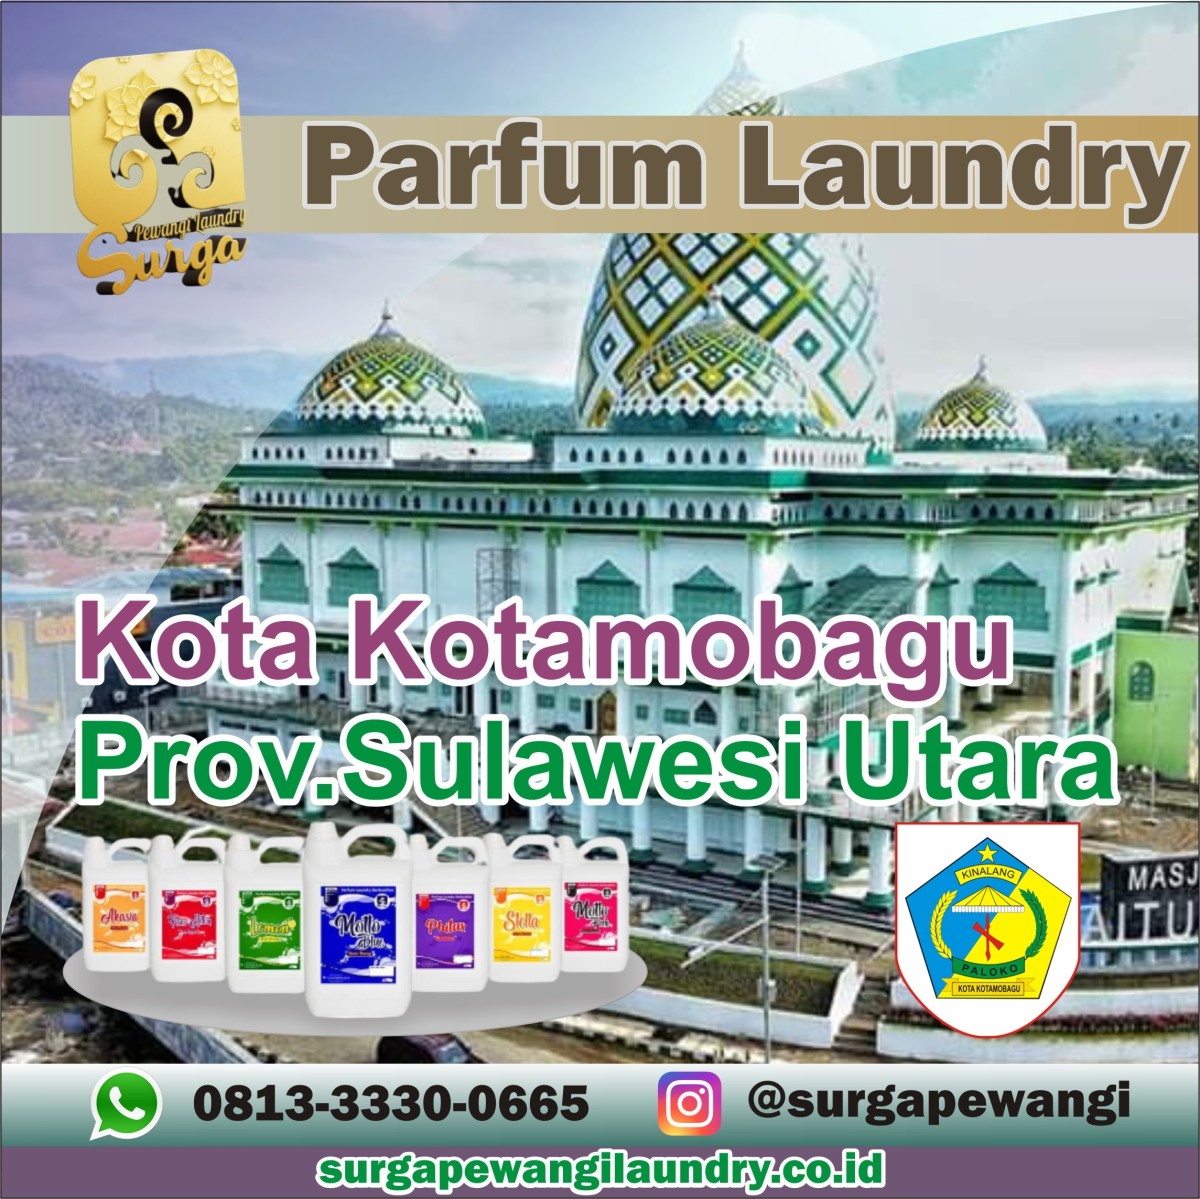 Parfum Laundry Kota Kotamobagu, Sulawesi Utara